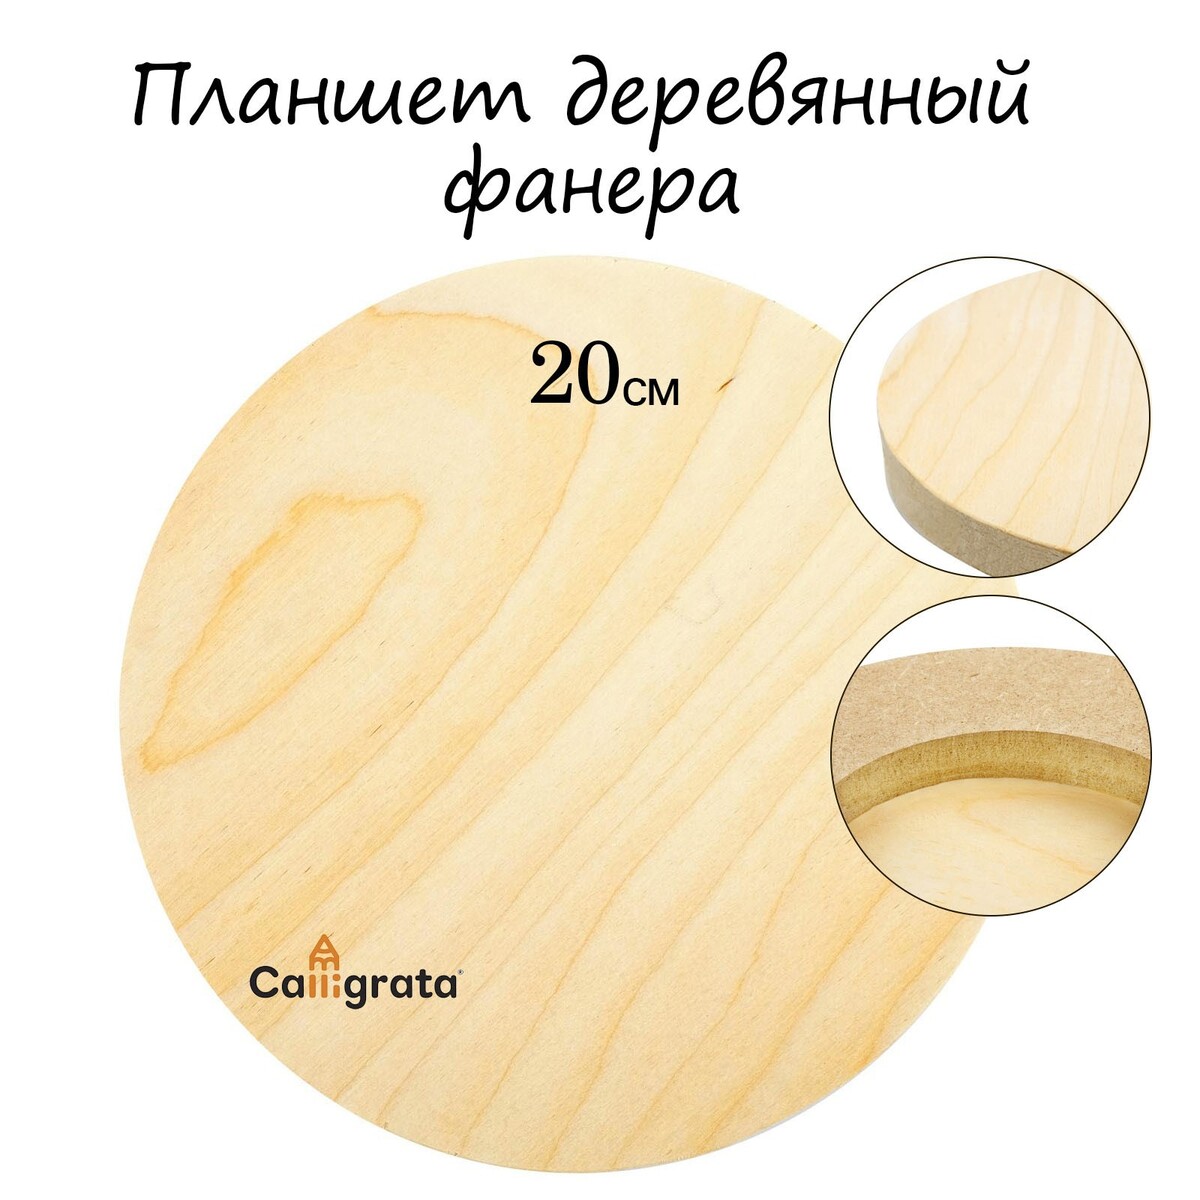 Планшет круглый деревянный фанера d-20 х 2 см, сосна, calligrata планшет деревянный 40 х 50 х 2 см двп